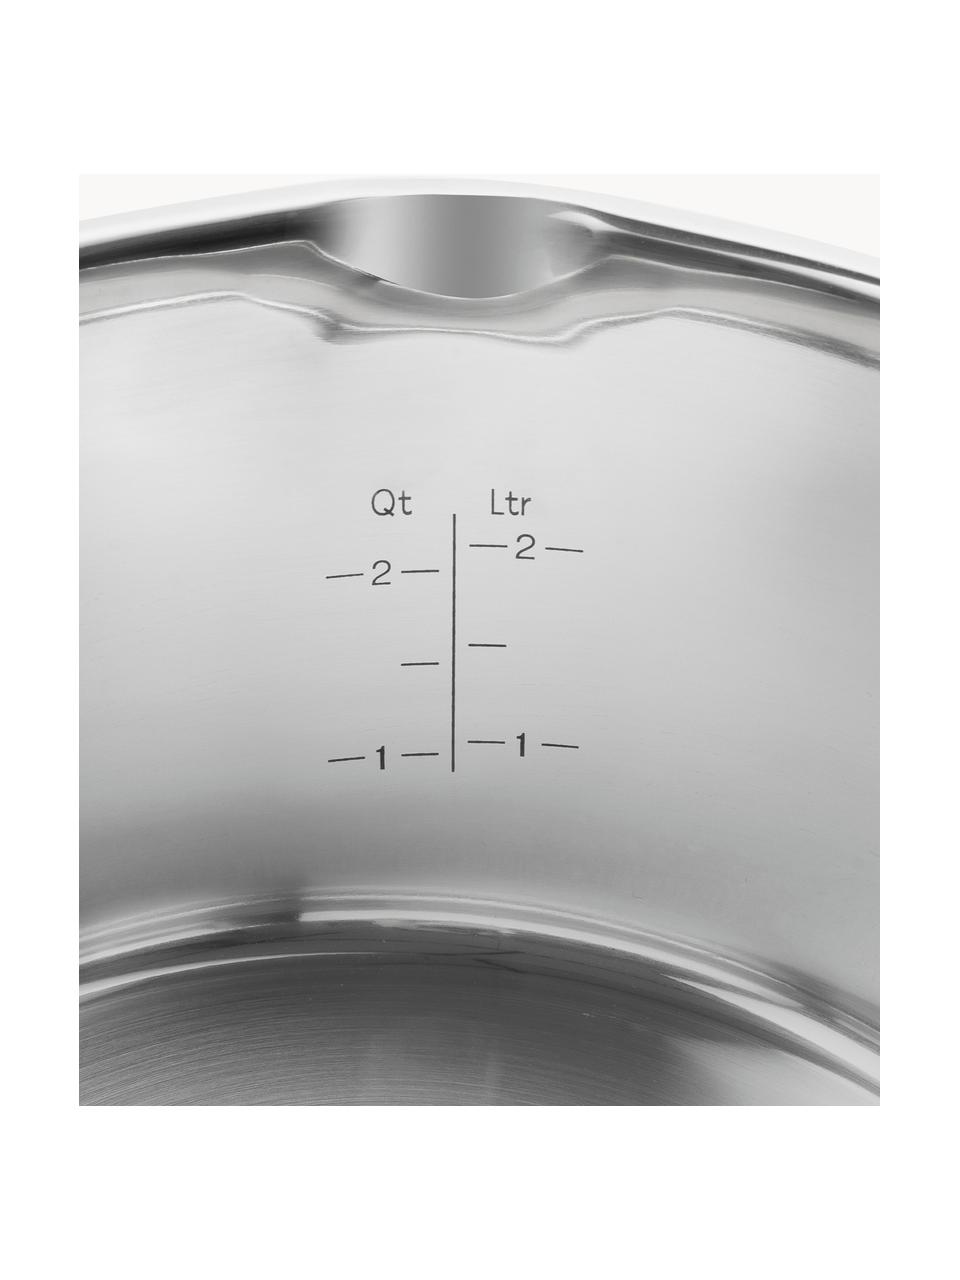 Kochtöpfe TrueFlow aus Edelstahl, 4er-Set, Deckel: Glas, 18/10 Edelstahl, Silberfarben, 4-tlg. Set mit verschiedenen Größen